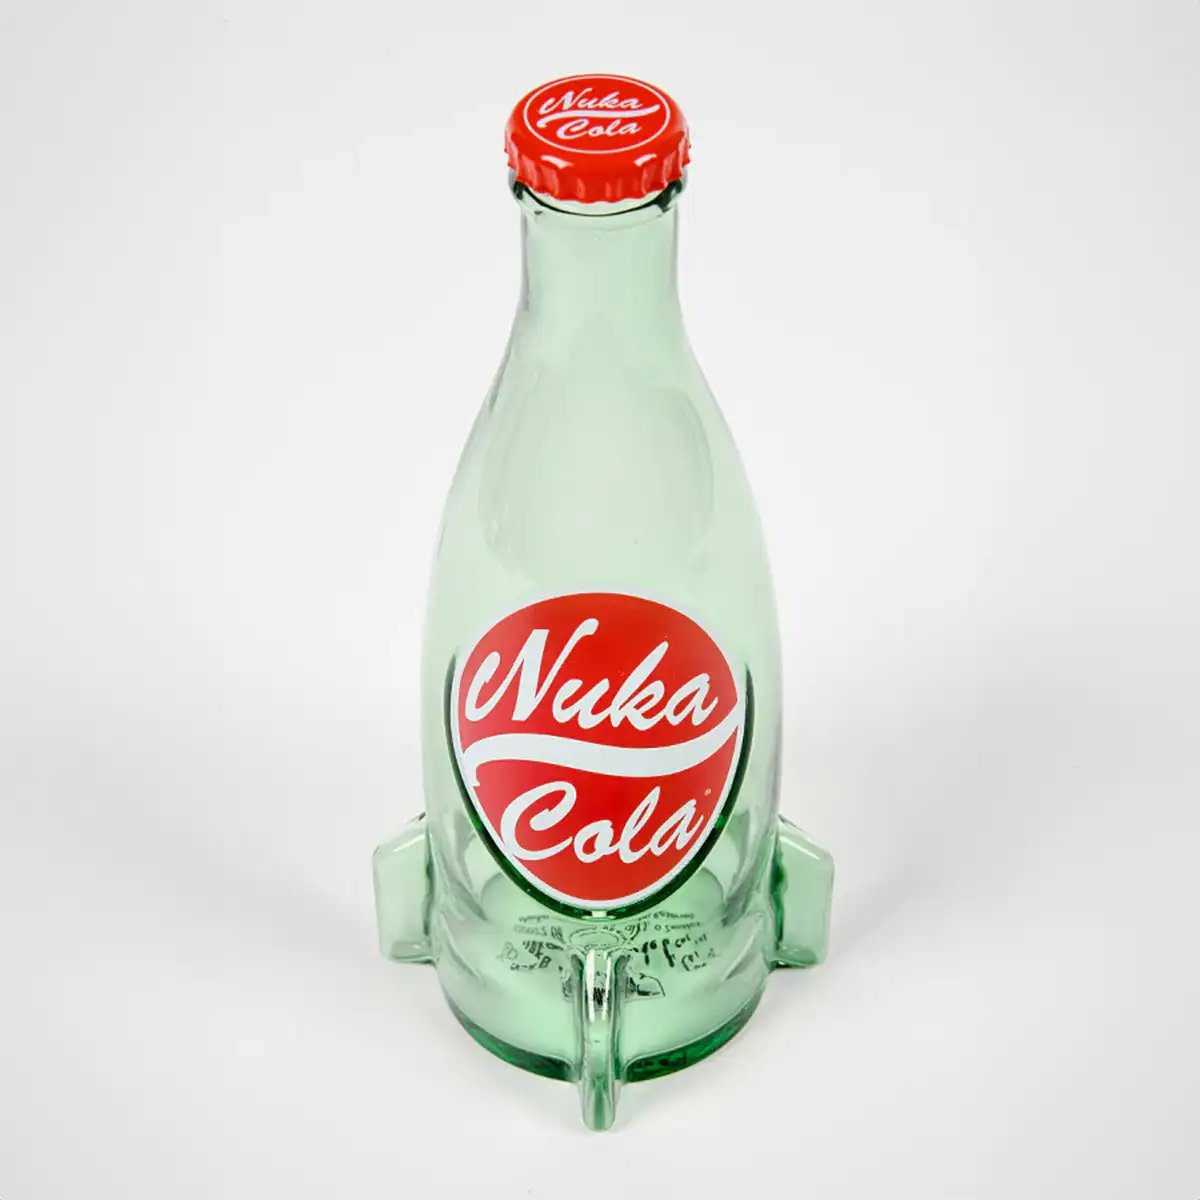 Fallout "Nuka Cola" Glasflasche und Kronkorken Image 8